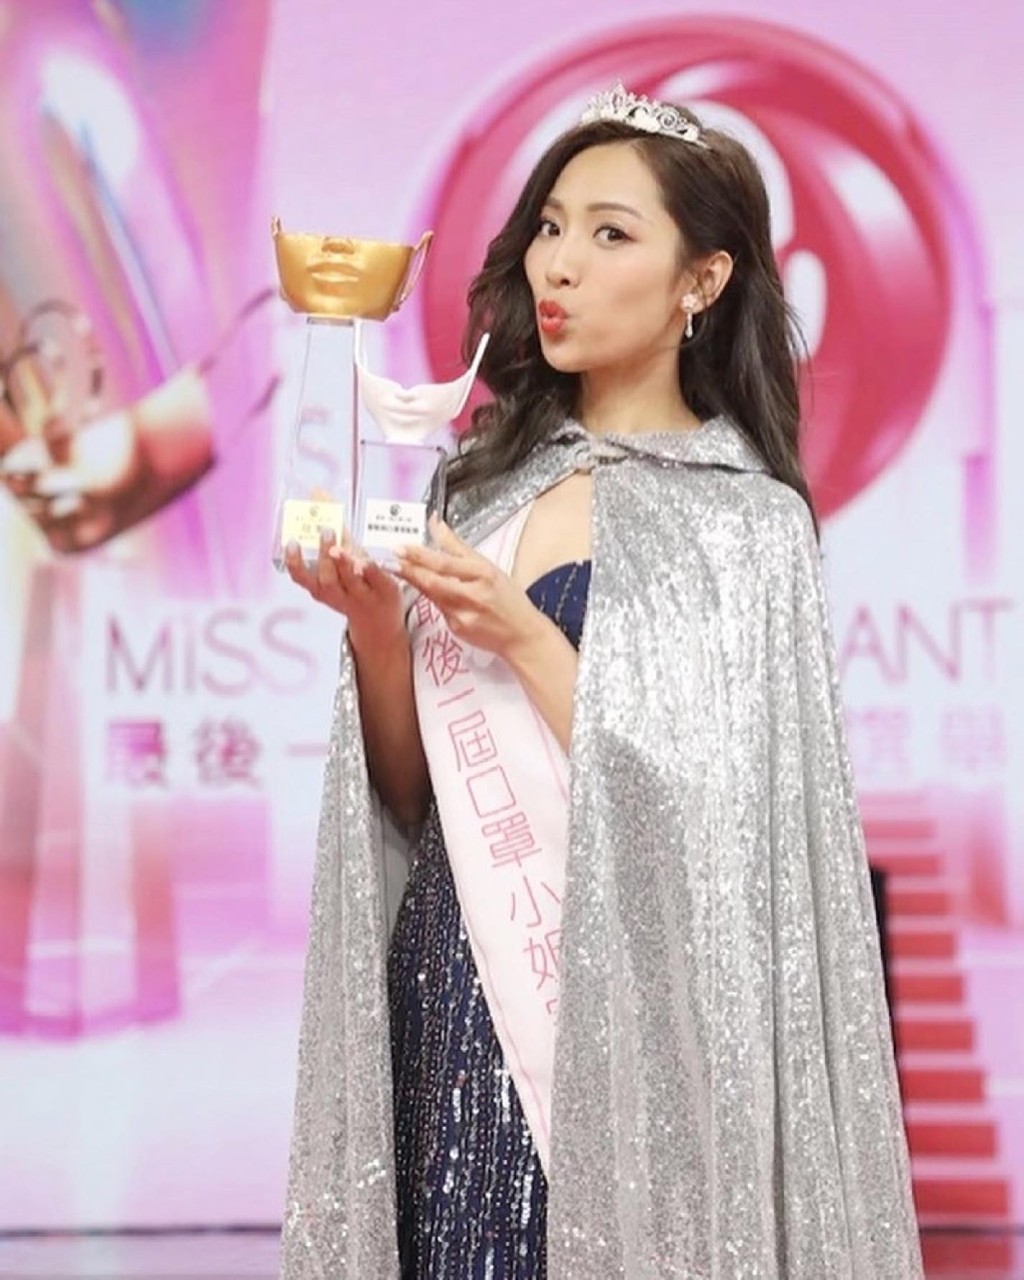 郑伊琪是《最后一届口罩小姐选举》冠军兼“服装与口罩配搭奖”得主。